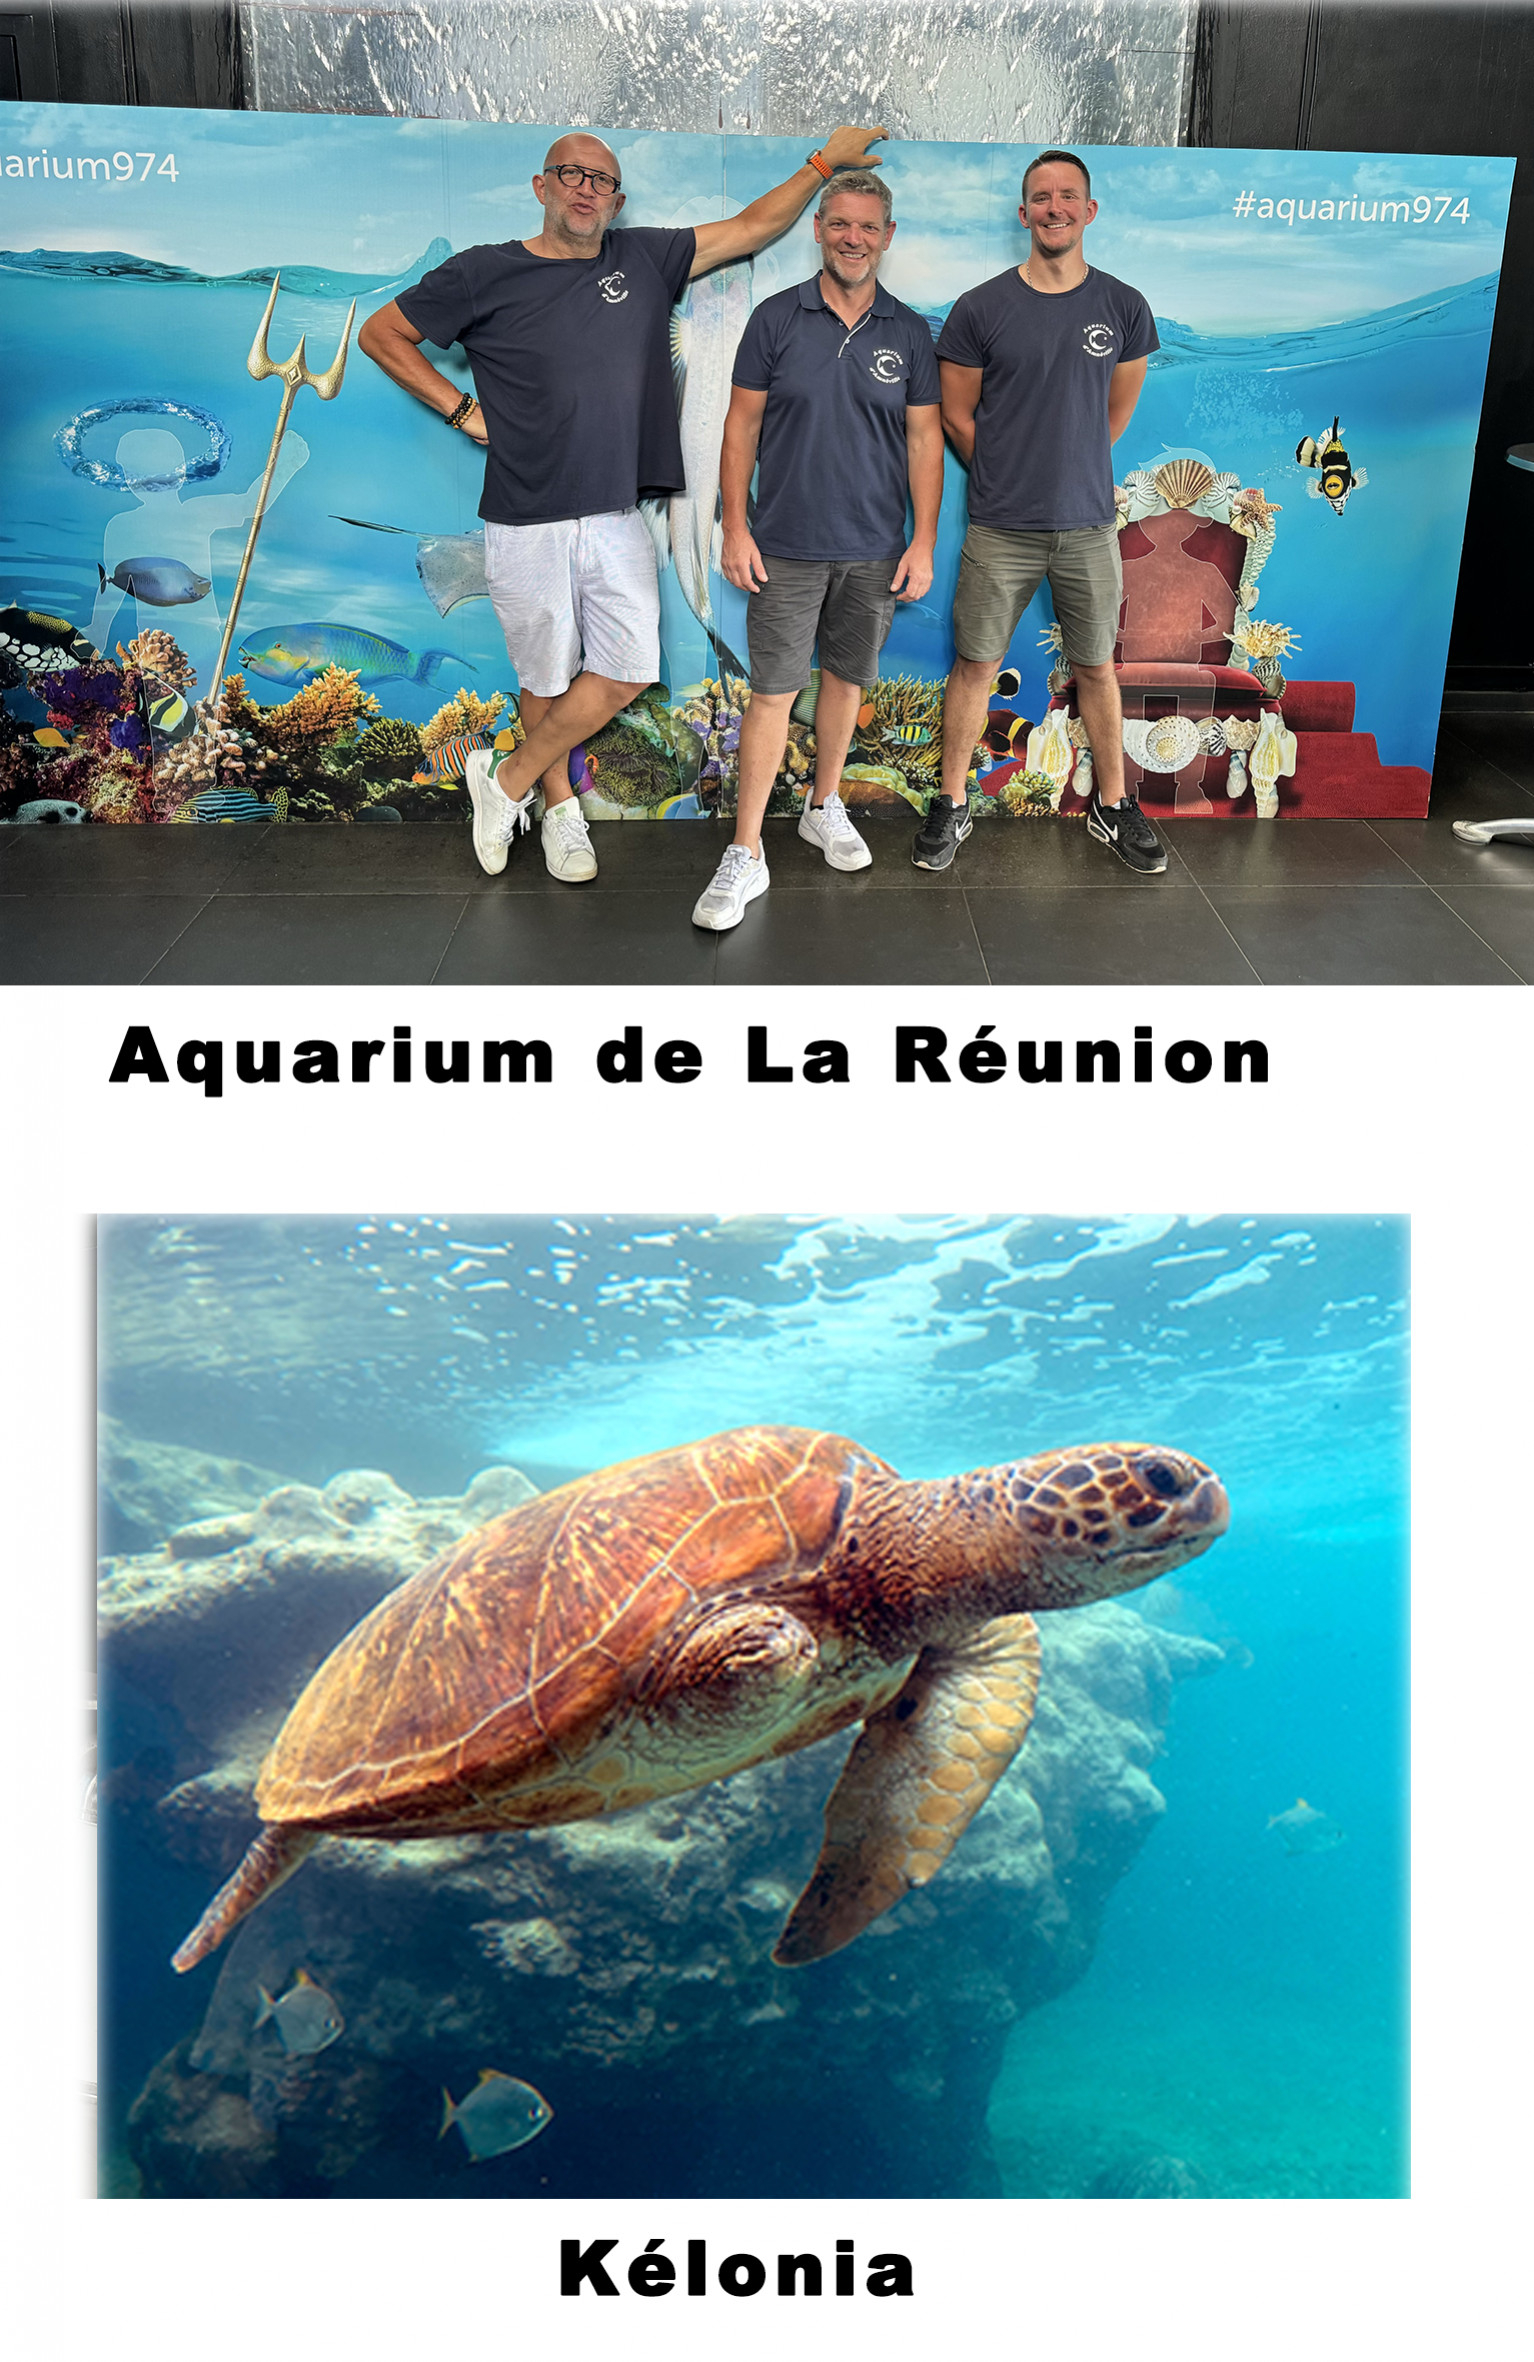 Aquarium de La Réunion et Kélonia